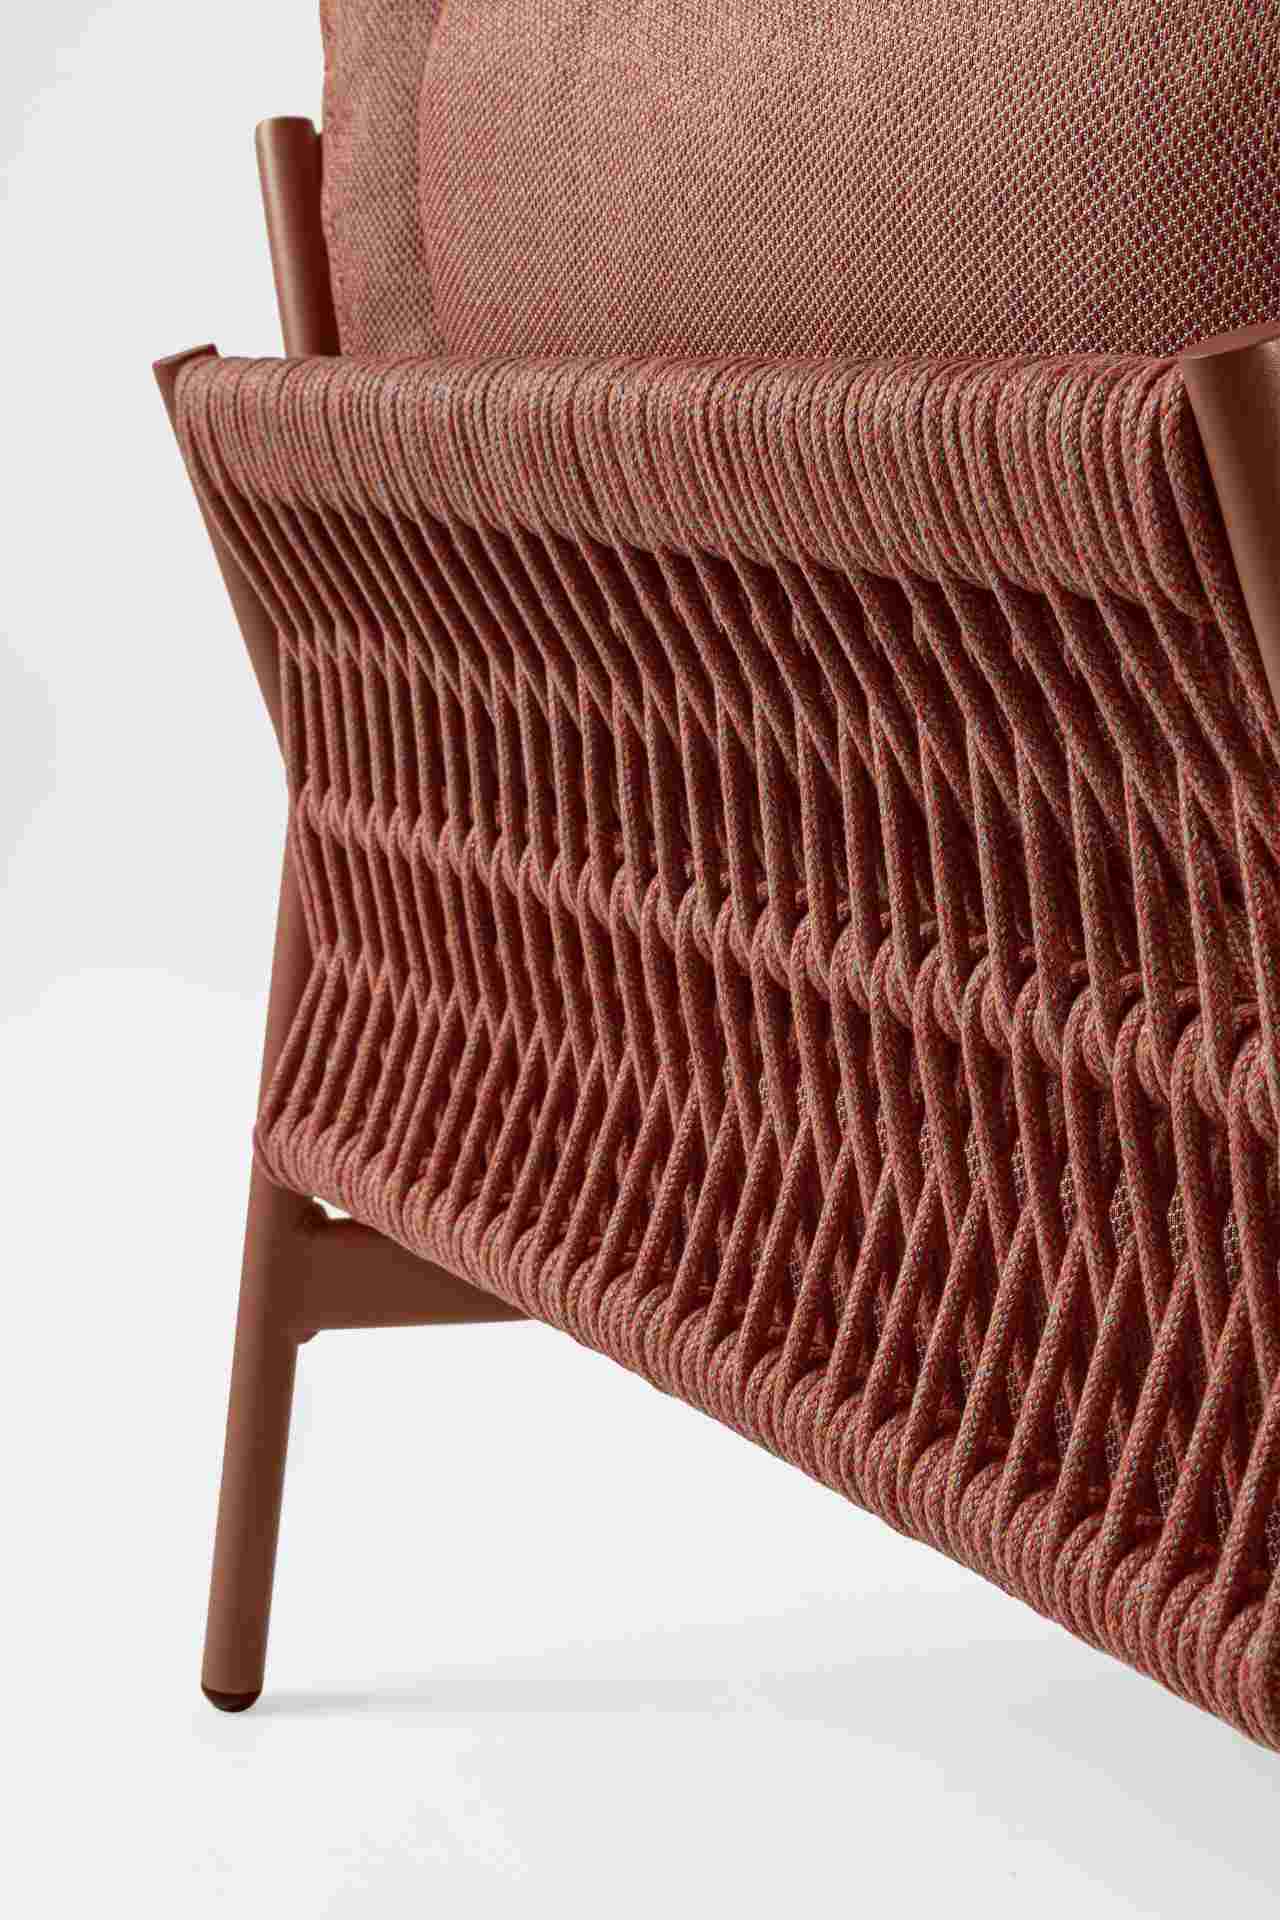 Das Gartensofa Pardis überzeugt mit seinem modernen Design. Gefertigt wurde es aus Olefin-Stoff, welcher einen roten Farbton besitzt. Das Gestell ist aus Aluminium und hat eine rote Farbe. Das Sofa verfügt über eine Sitzhöhe von 38 cm und ist für den Outd